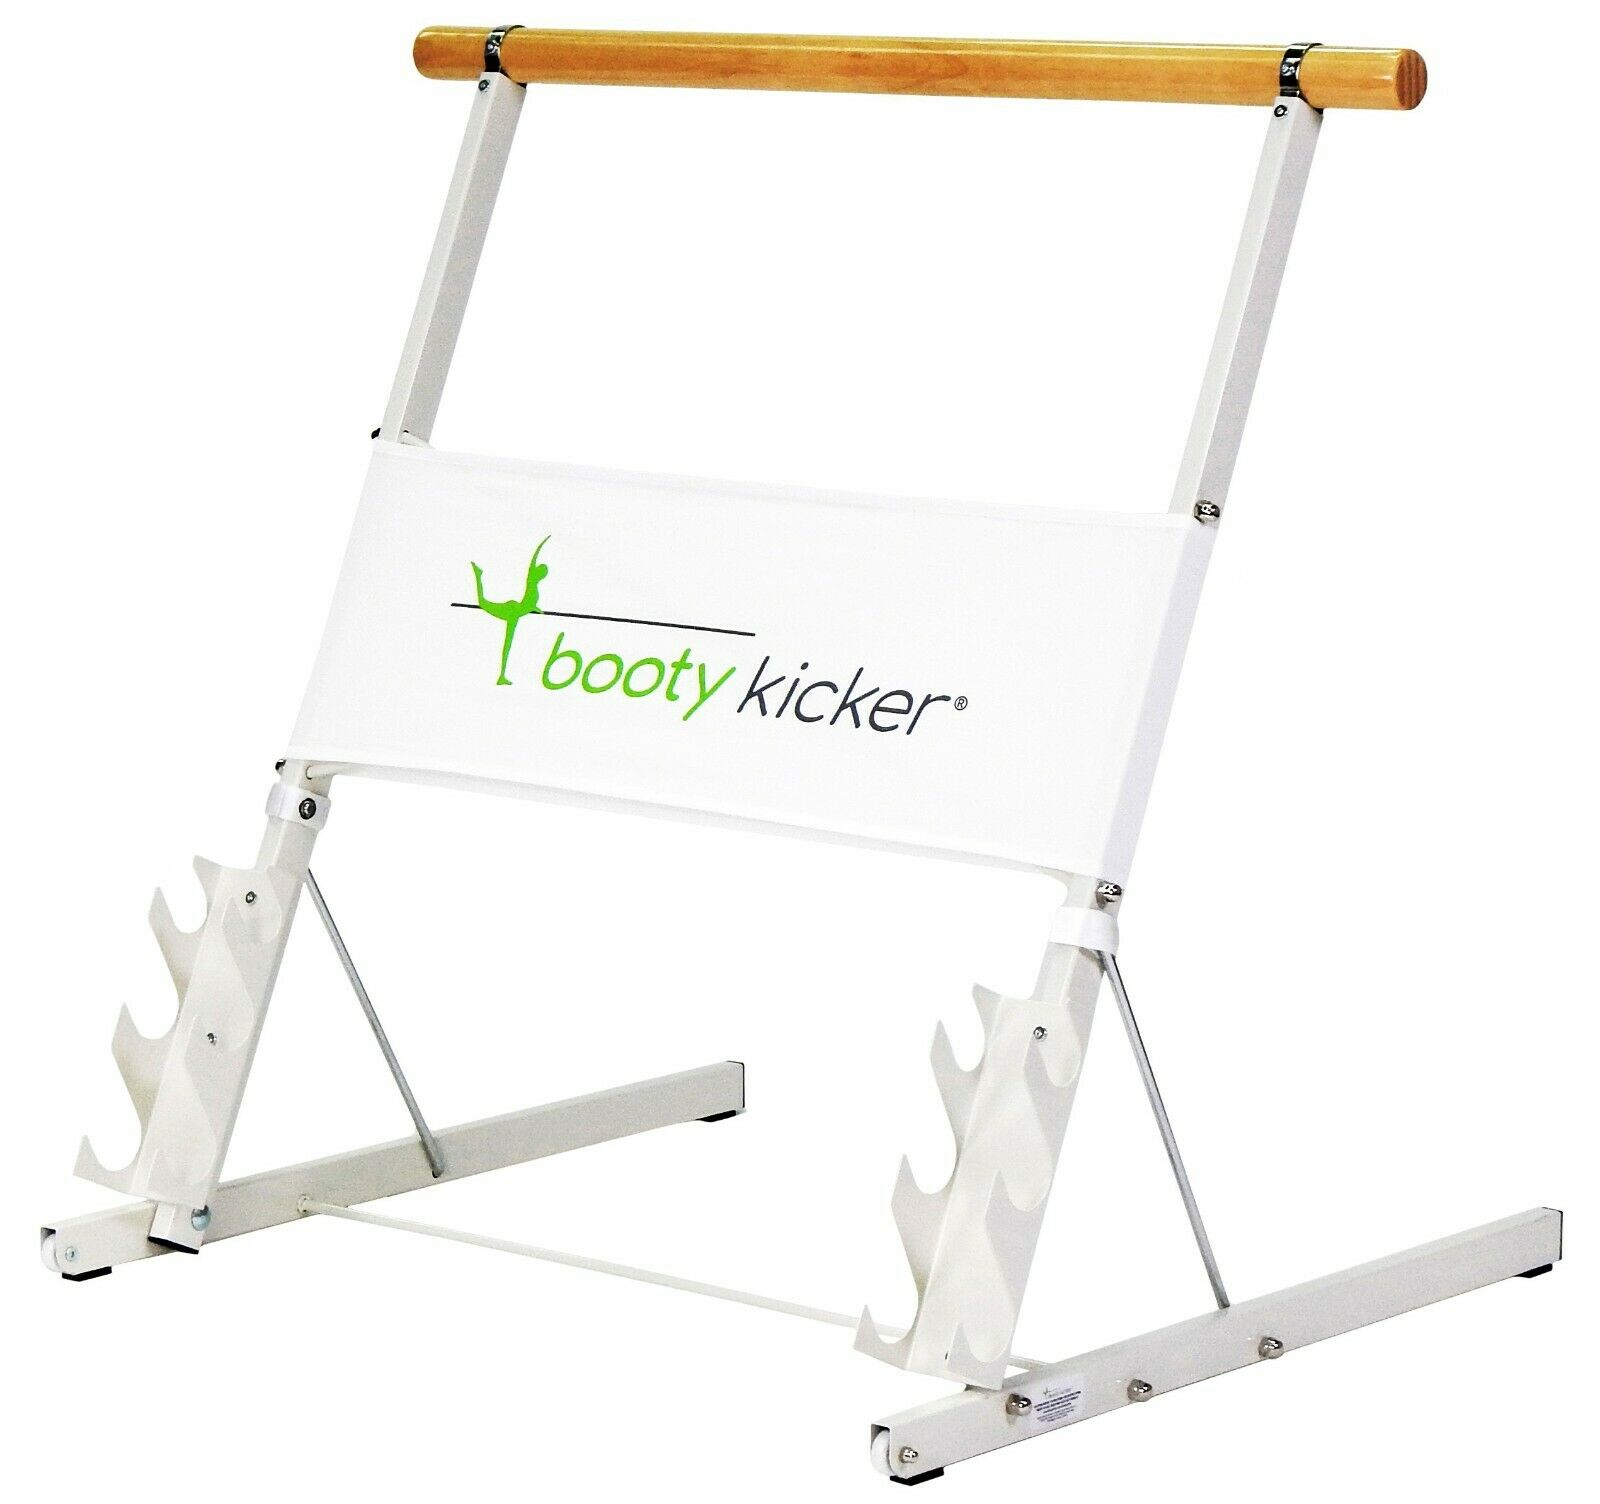 Booty Kicker - Portable Home Exercise Ballet Barre